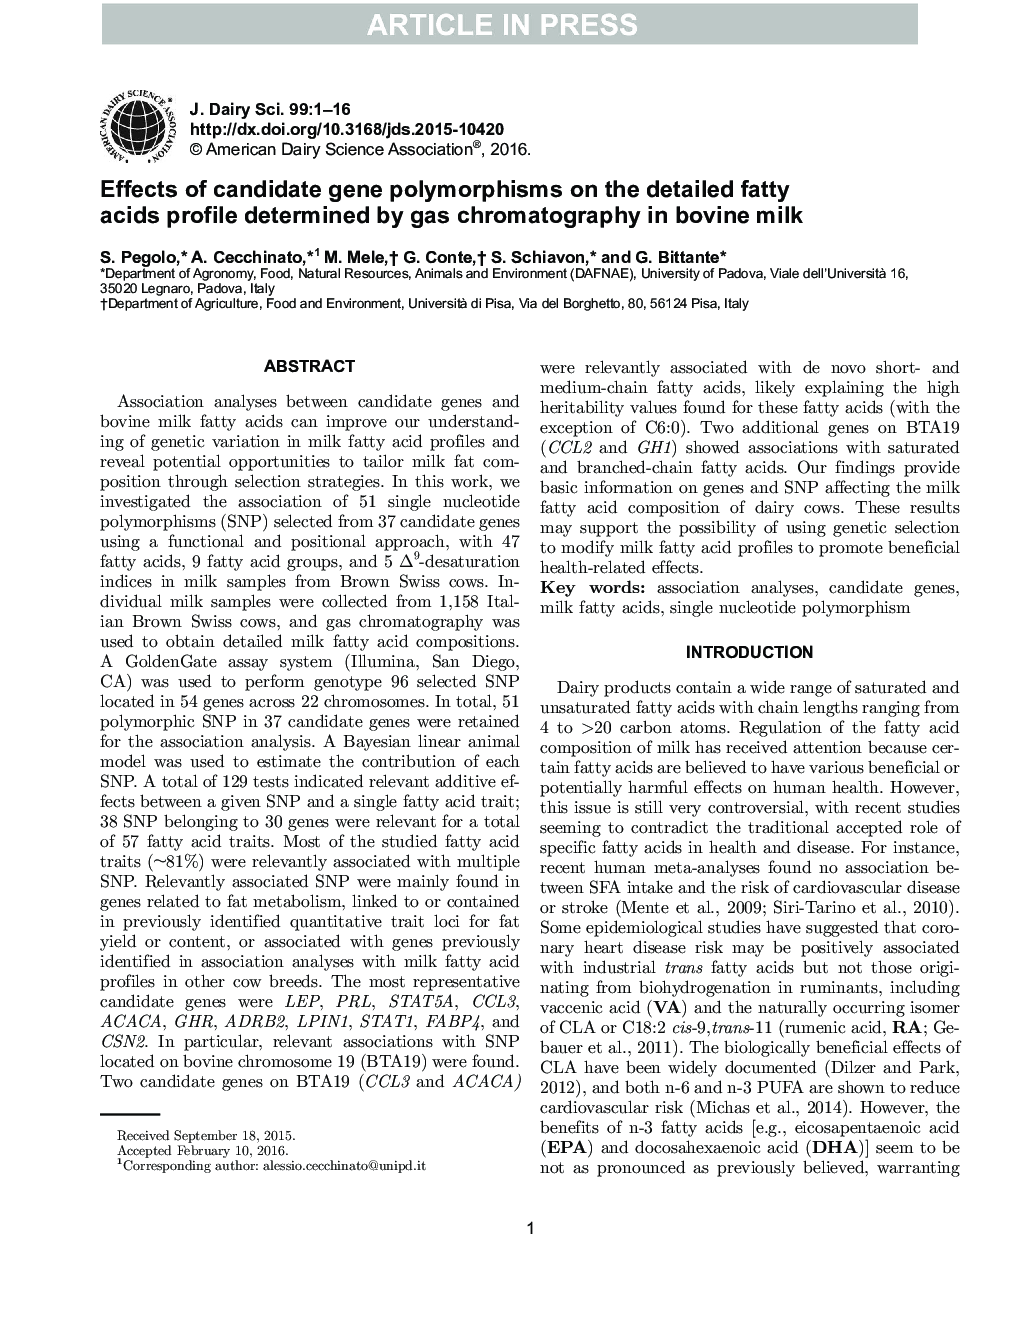 اثر پلی مورفیسم ژن کاندید بر روی مشخصات اسید چرب مفصل تعیین شده توسط کروماتوگرافی گاز در شیر گاو 